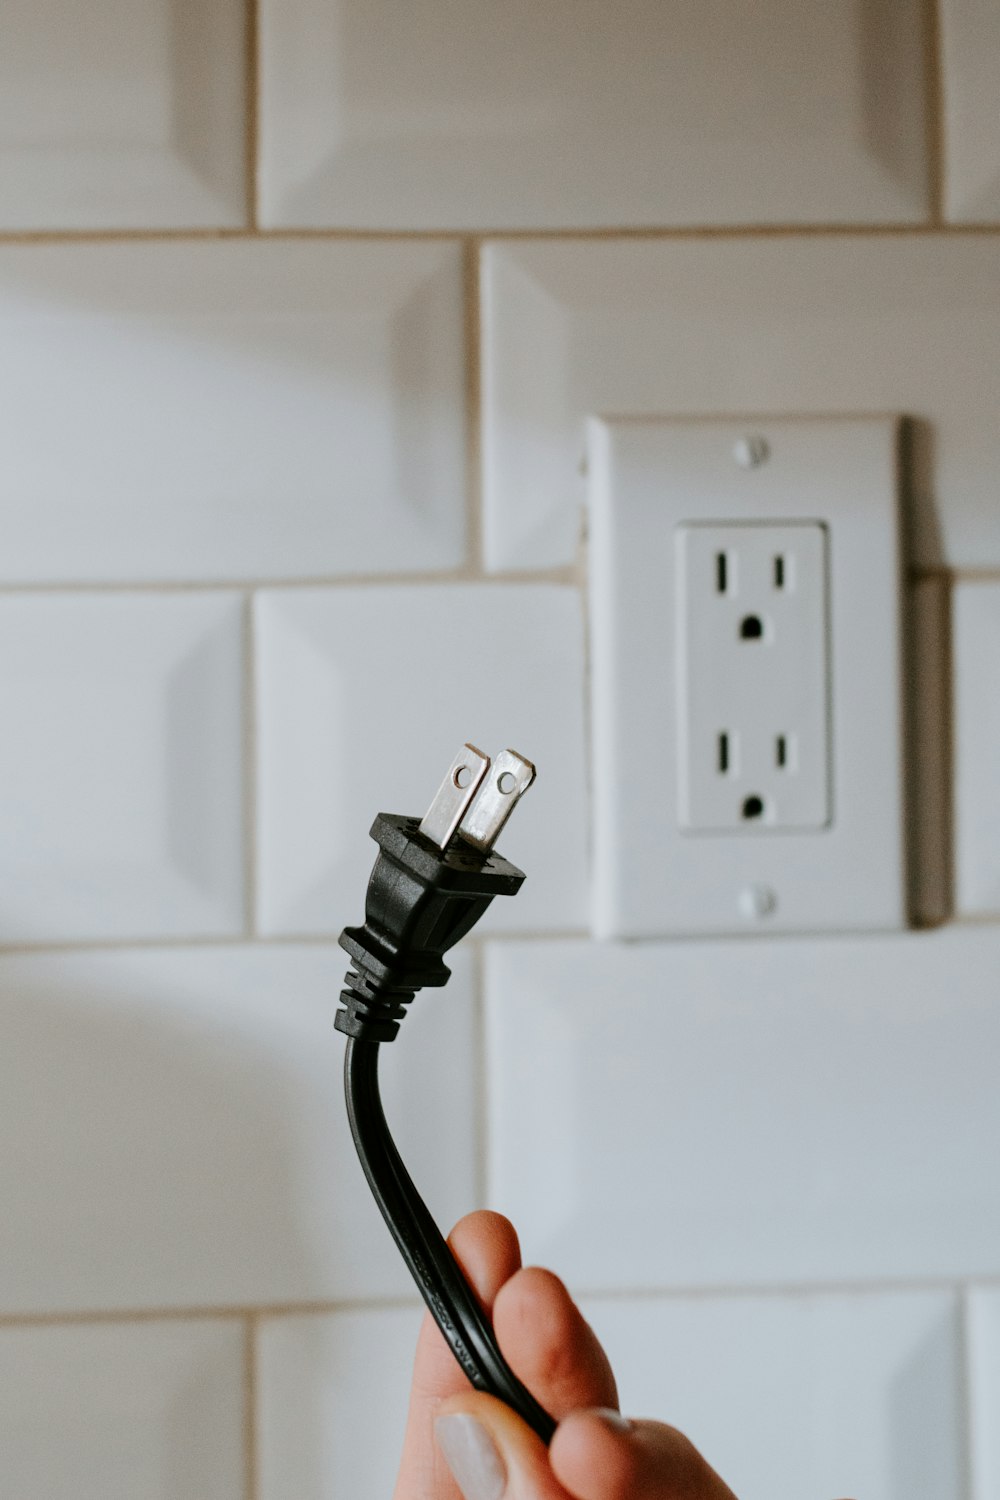 흰색 전기 소켓에 연결된 검은색 USB 케이블